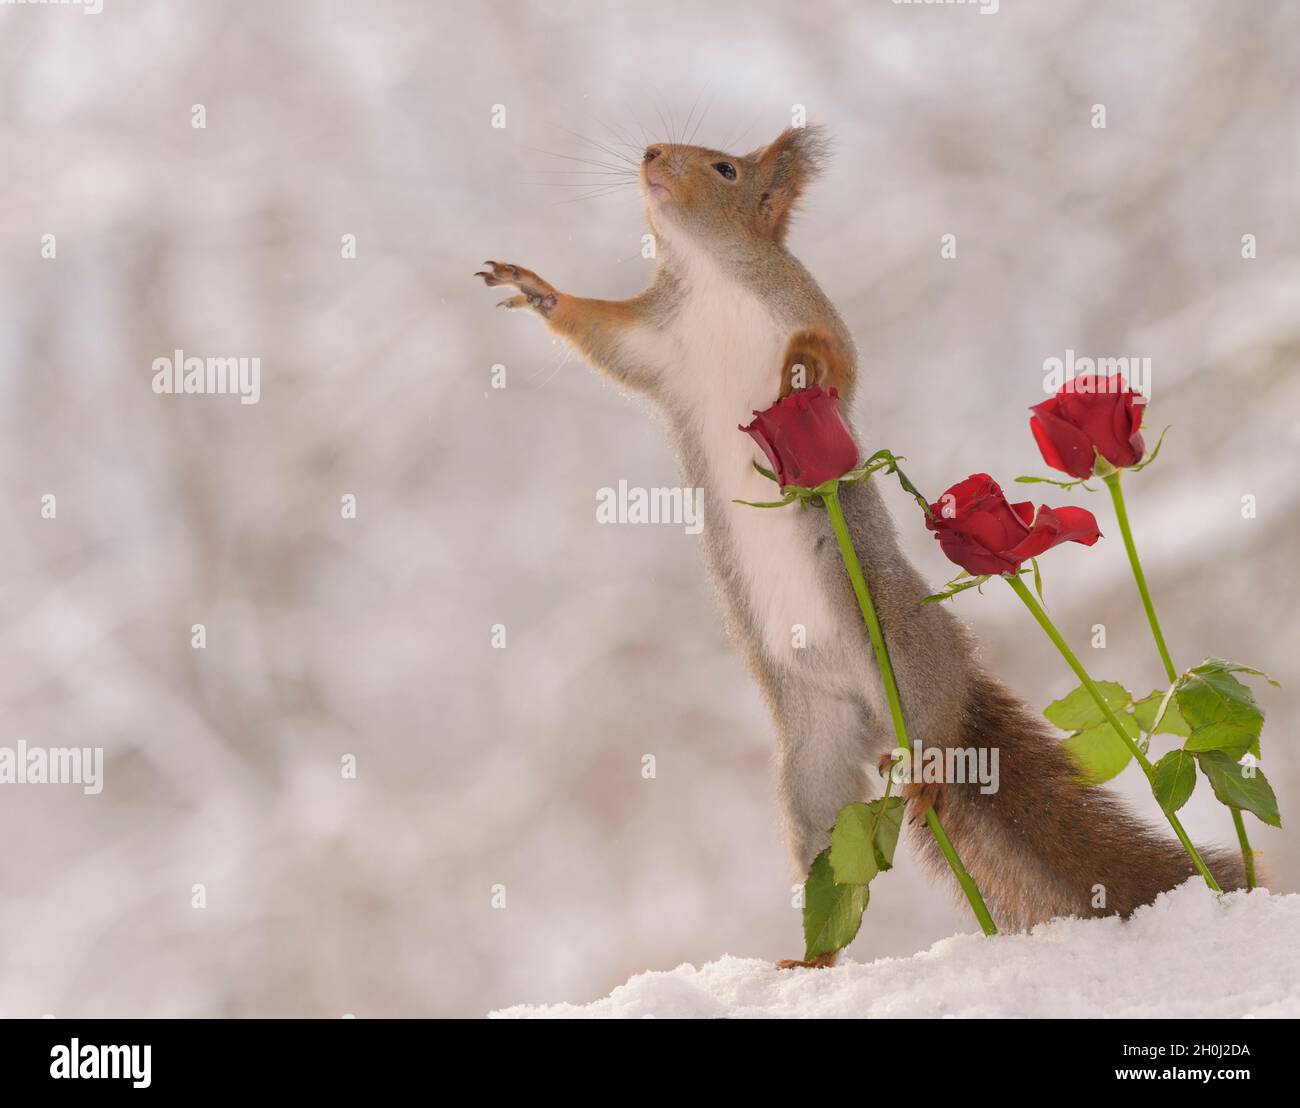 Das rote Eichhörnchen hält eine rote Rose, die sich nach oben streckt Stockfoto